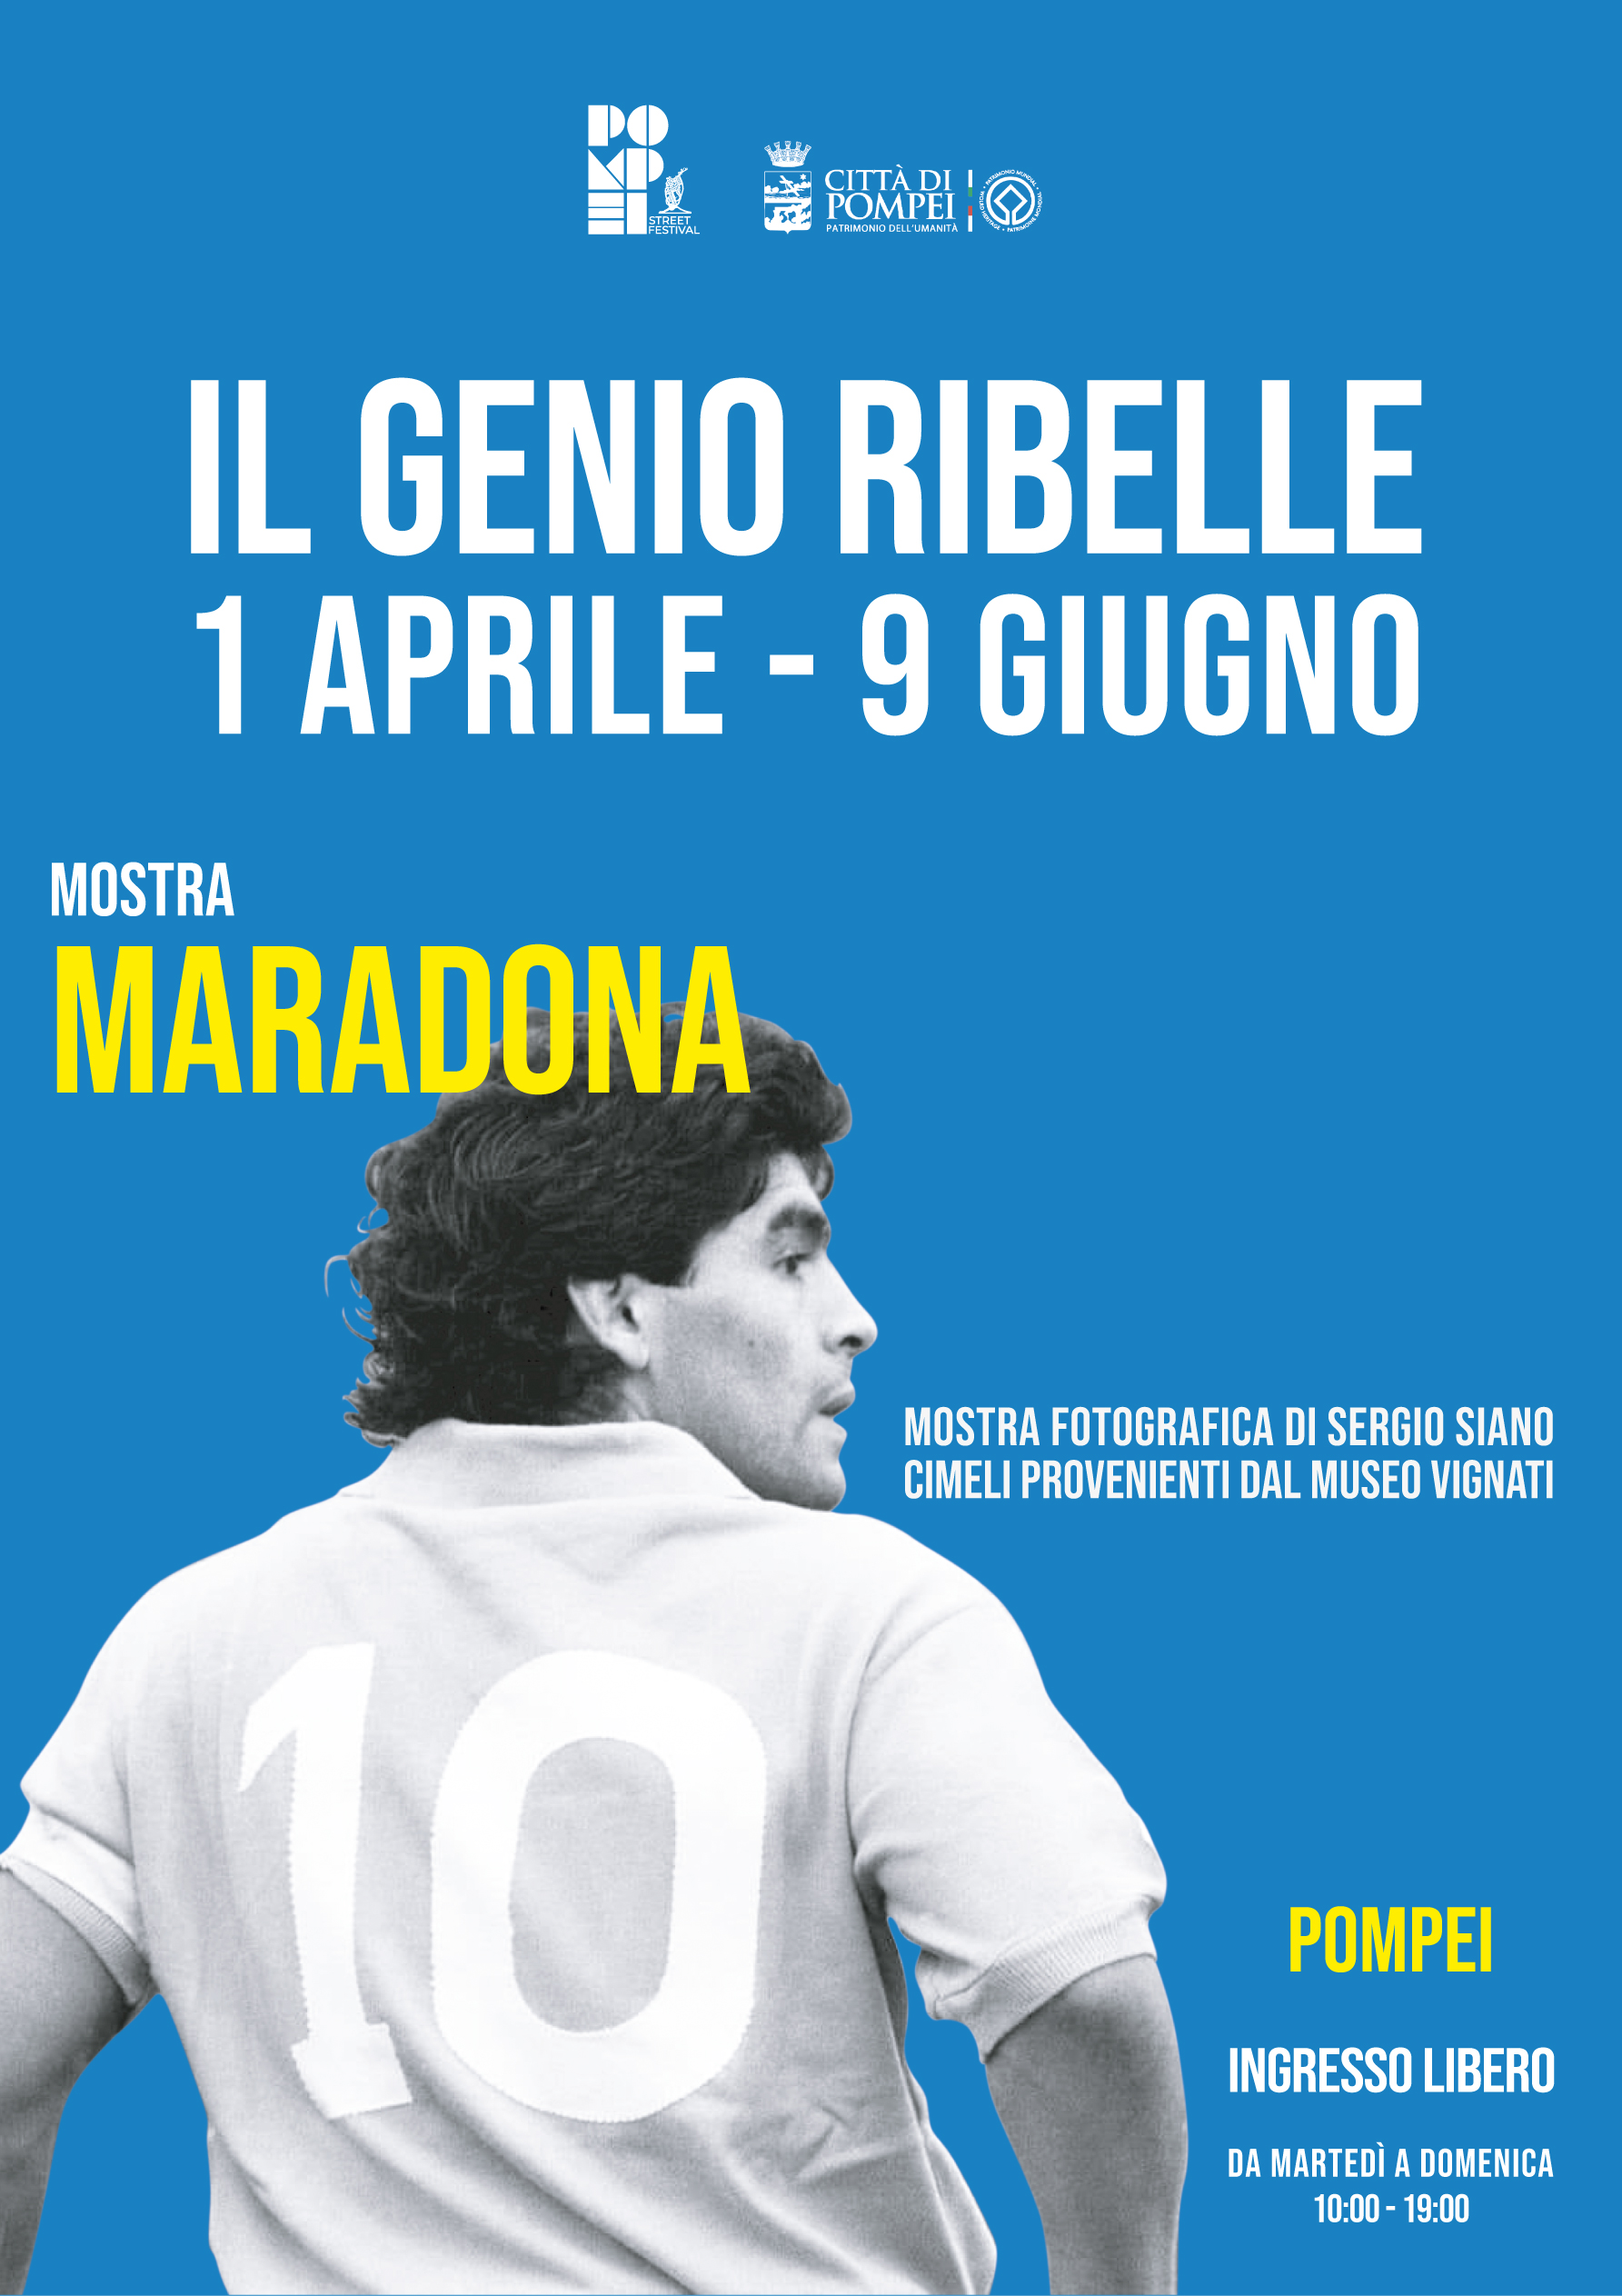 Maradona, il genio ribelle”: la mostra a Pompei dal 1° aprile - Napoli  Village - Quotidiano di Informazioni Online